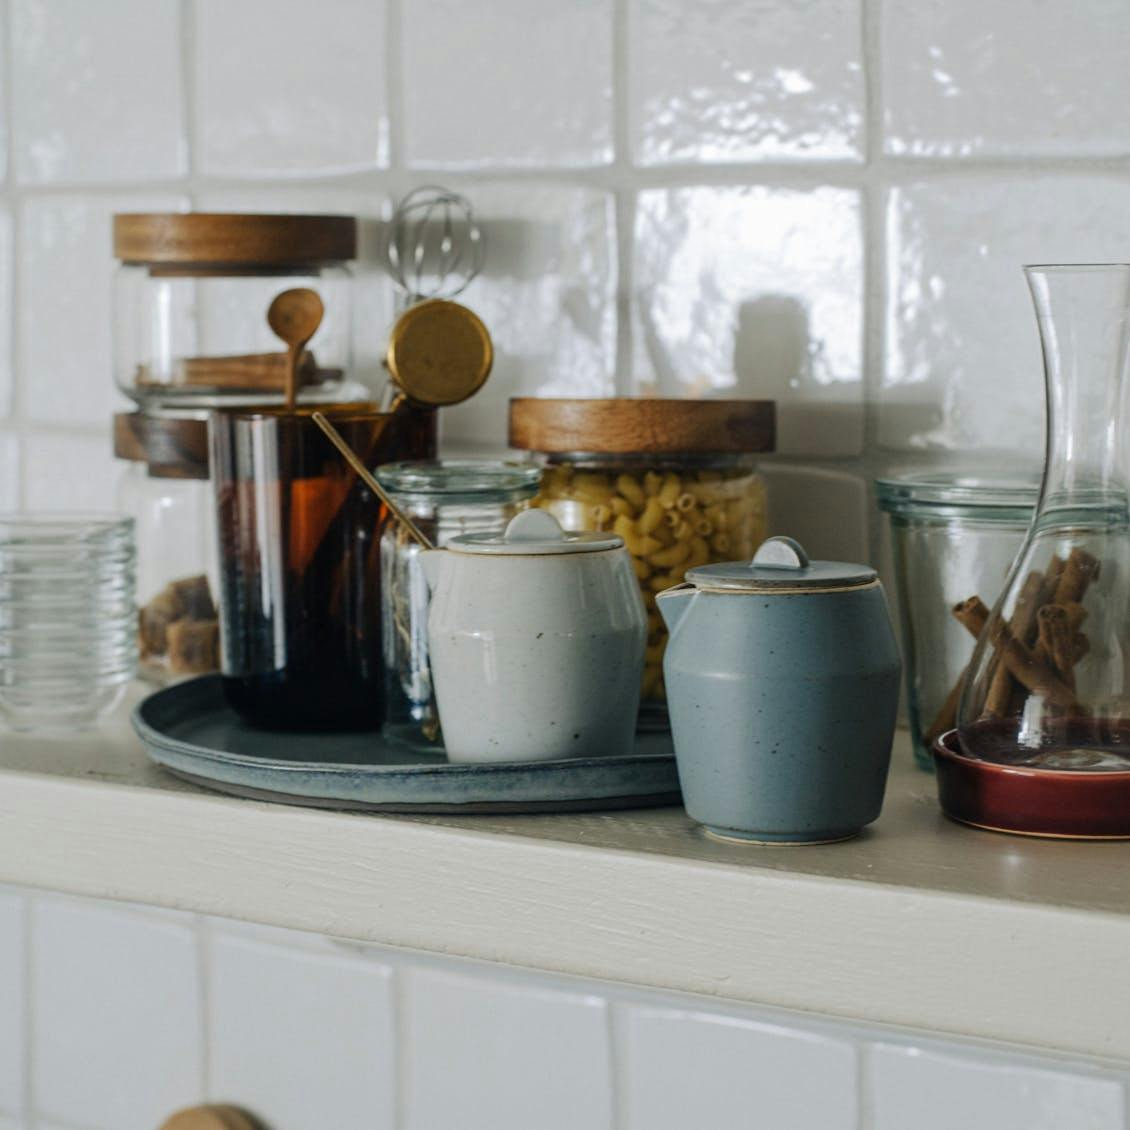 新商品】「休日朝じかん」に使いたい食器シリーズができました。カフェ 